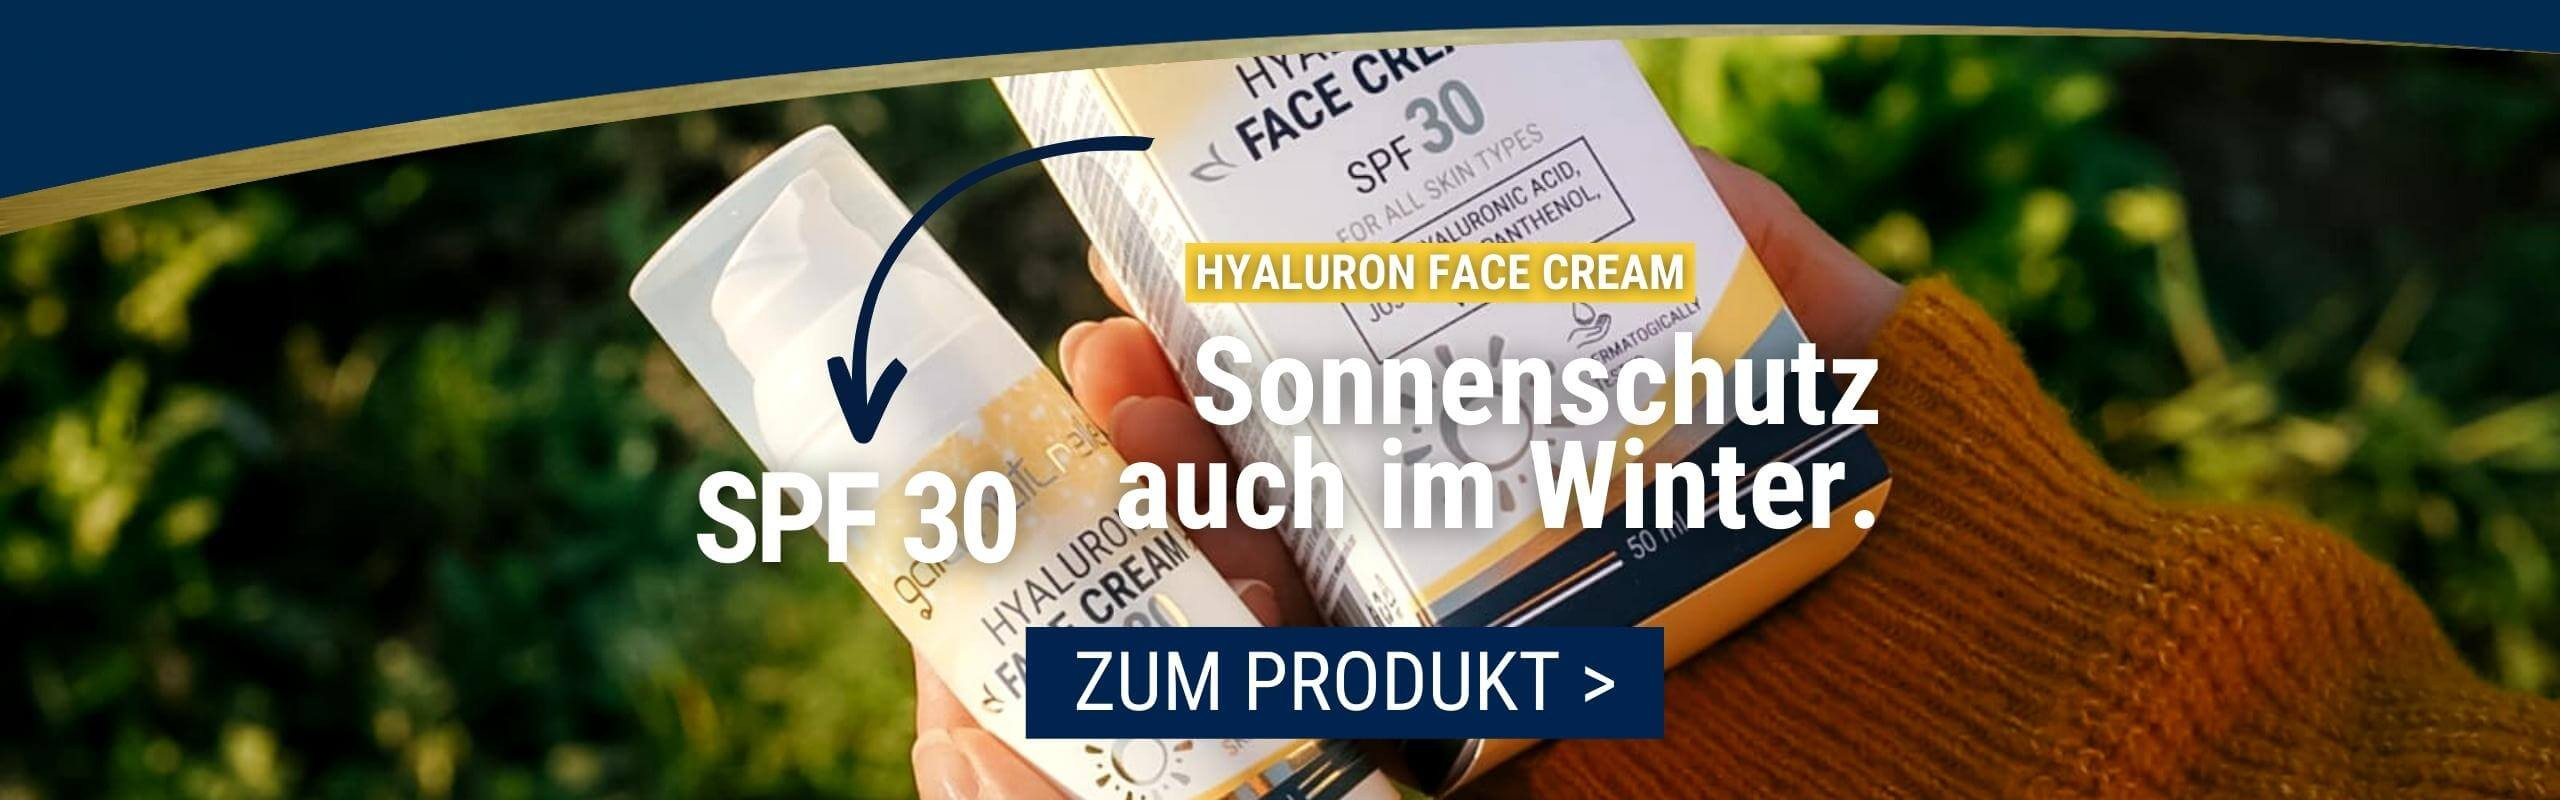 Hyaluron Face Cream SPF 30 - Sonnenschutz auch im Winter